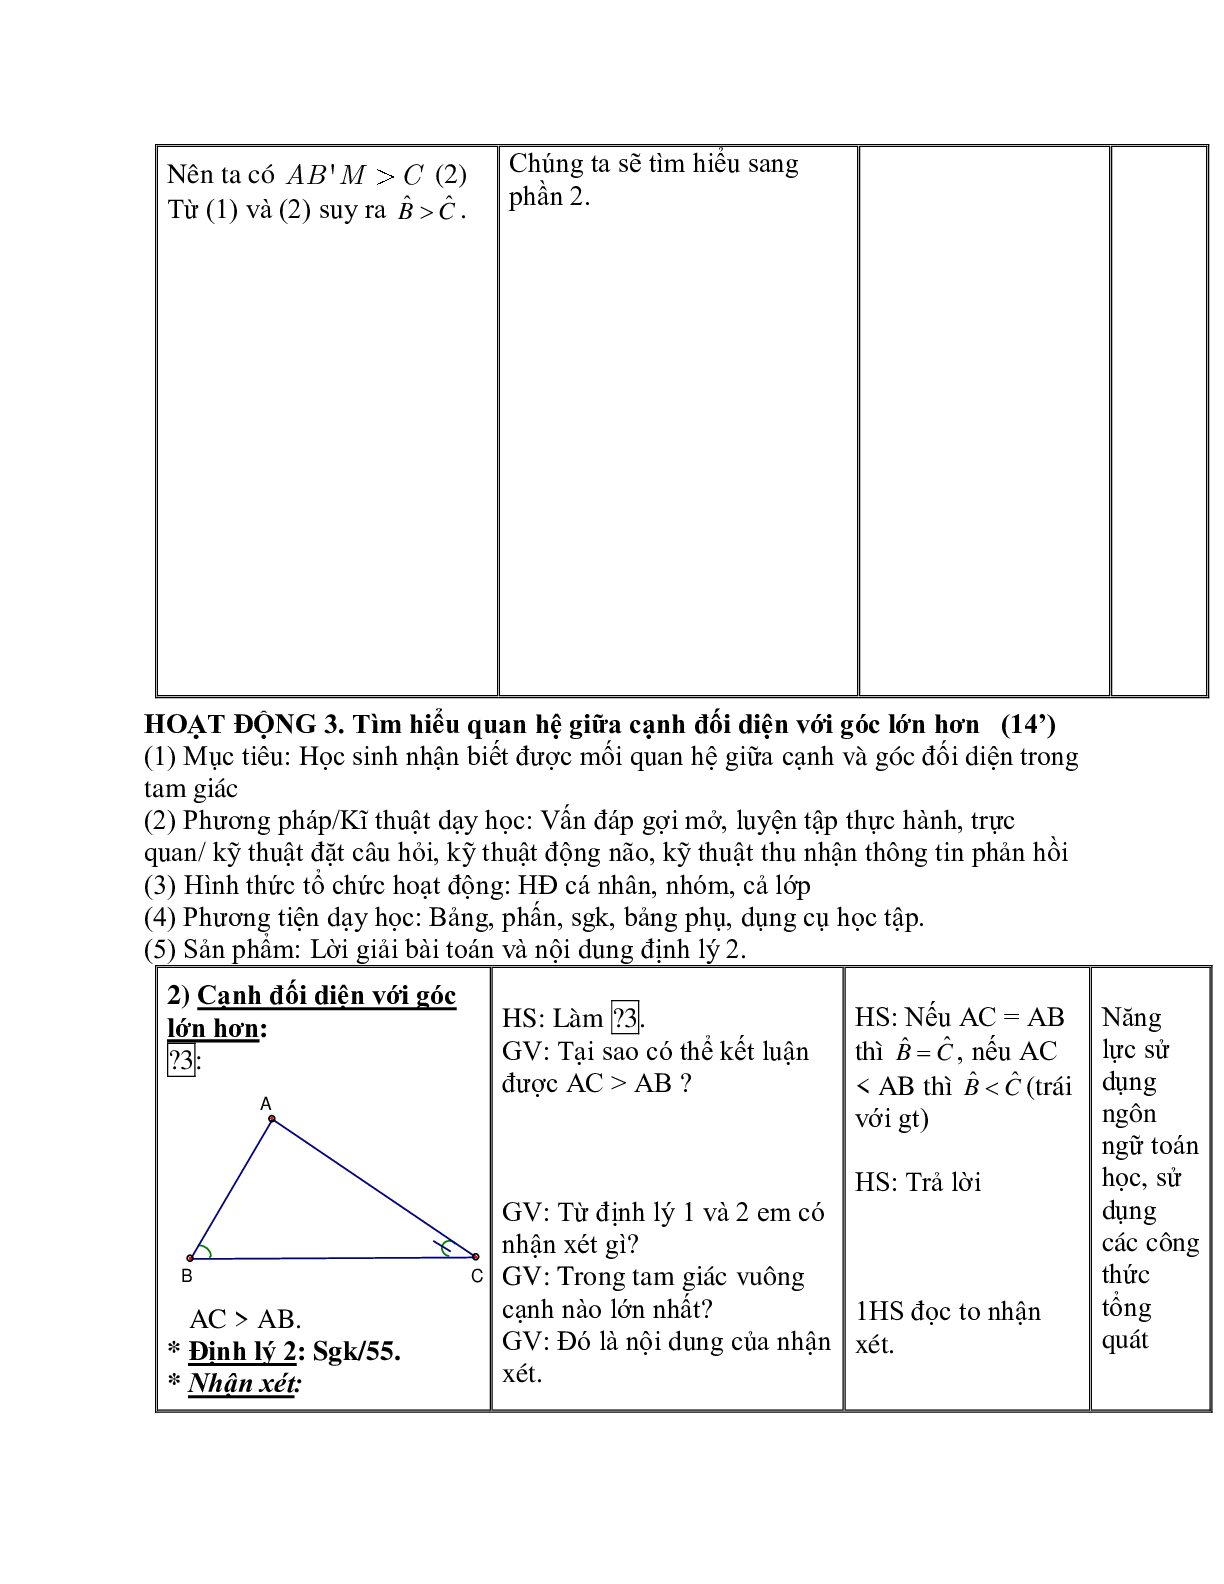 Giáo án Toán học 7 bài 1: Quan hệ giữa góc và cạnh đối diện trong một tam giác hay nhất (trang 4)